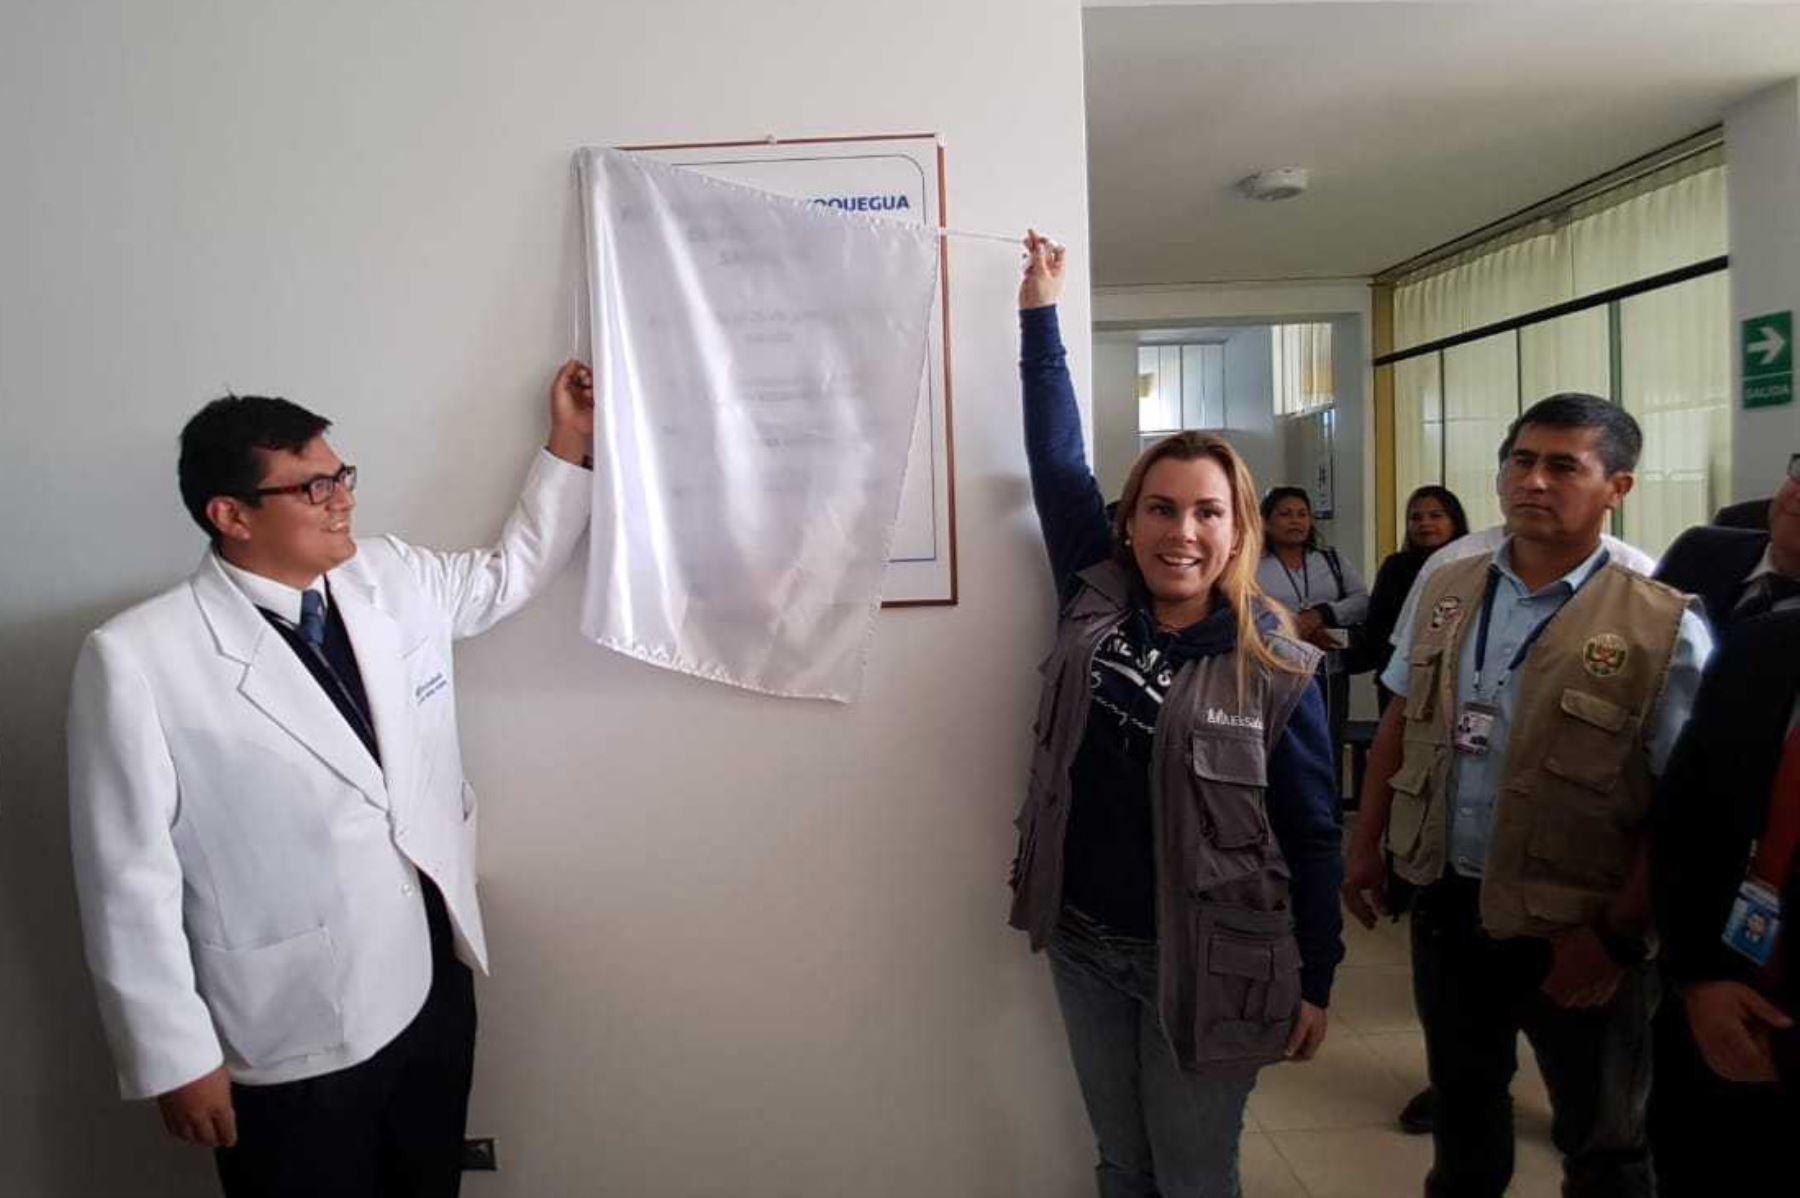 La presidenta ejecutiva de EsSalud, Fiorella Molinelli Aristondo, inauguró dos nuevos establecimientos de salud en la Red Asistencial Moquegua, en beneficio de más de 95,000 asegurados de las localidades de Samegua y Pampa Inalámbrica, en el marco de la política del fortalecimiento del primer nivel de atención en dicha región.